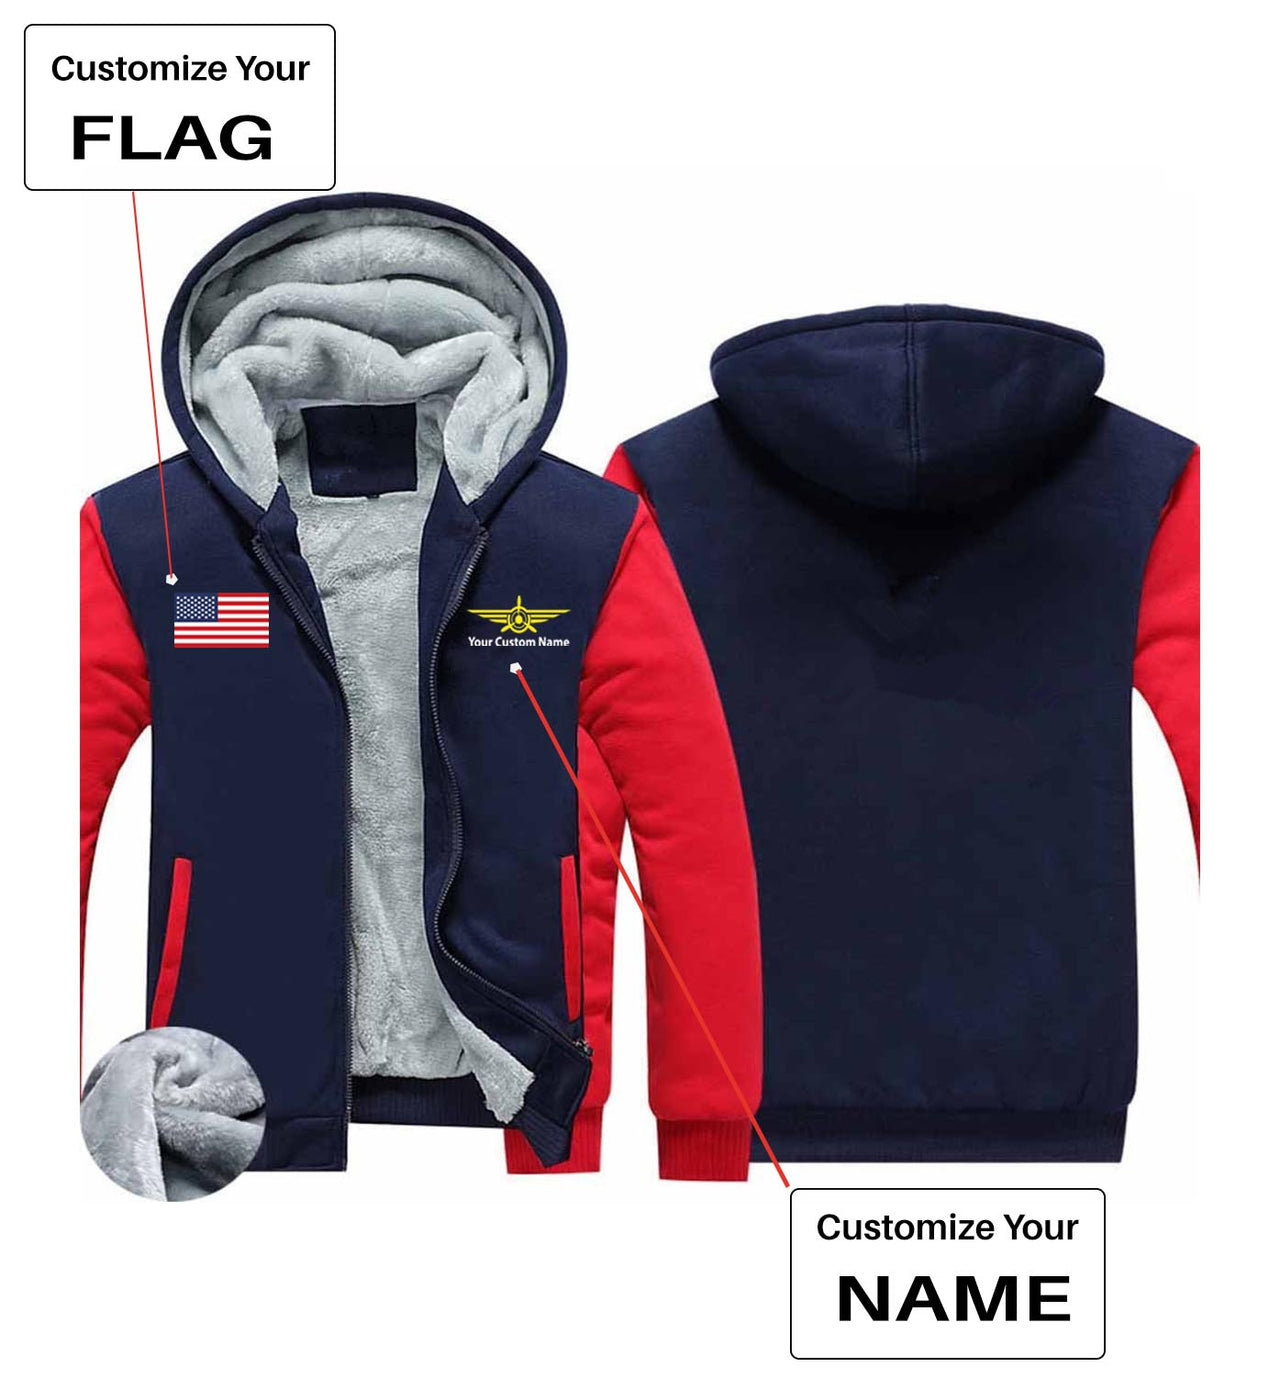 Your Custom Name & Flag (Badge 3) Designed Zipped Sweatshirts